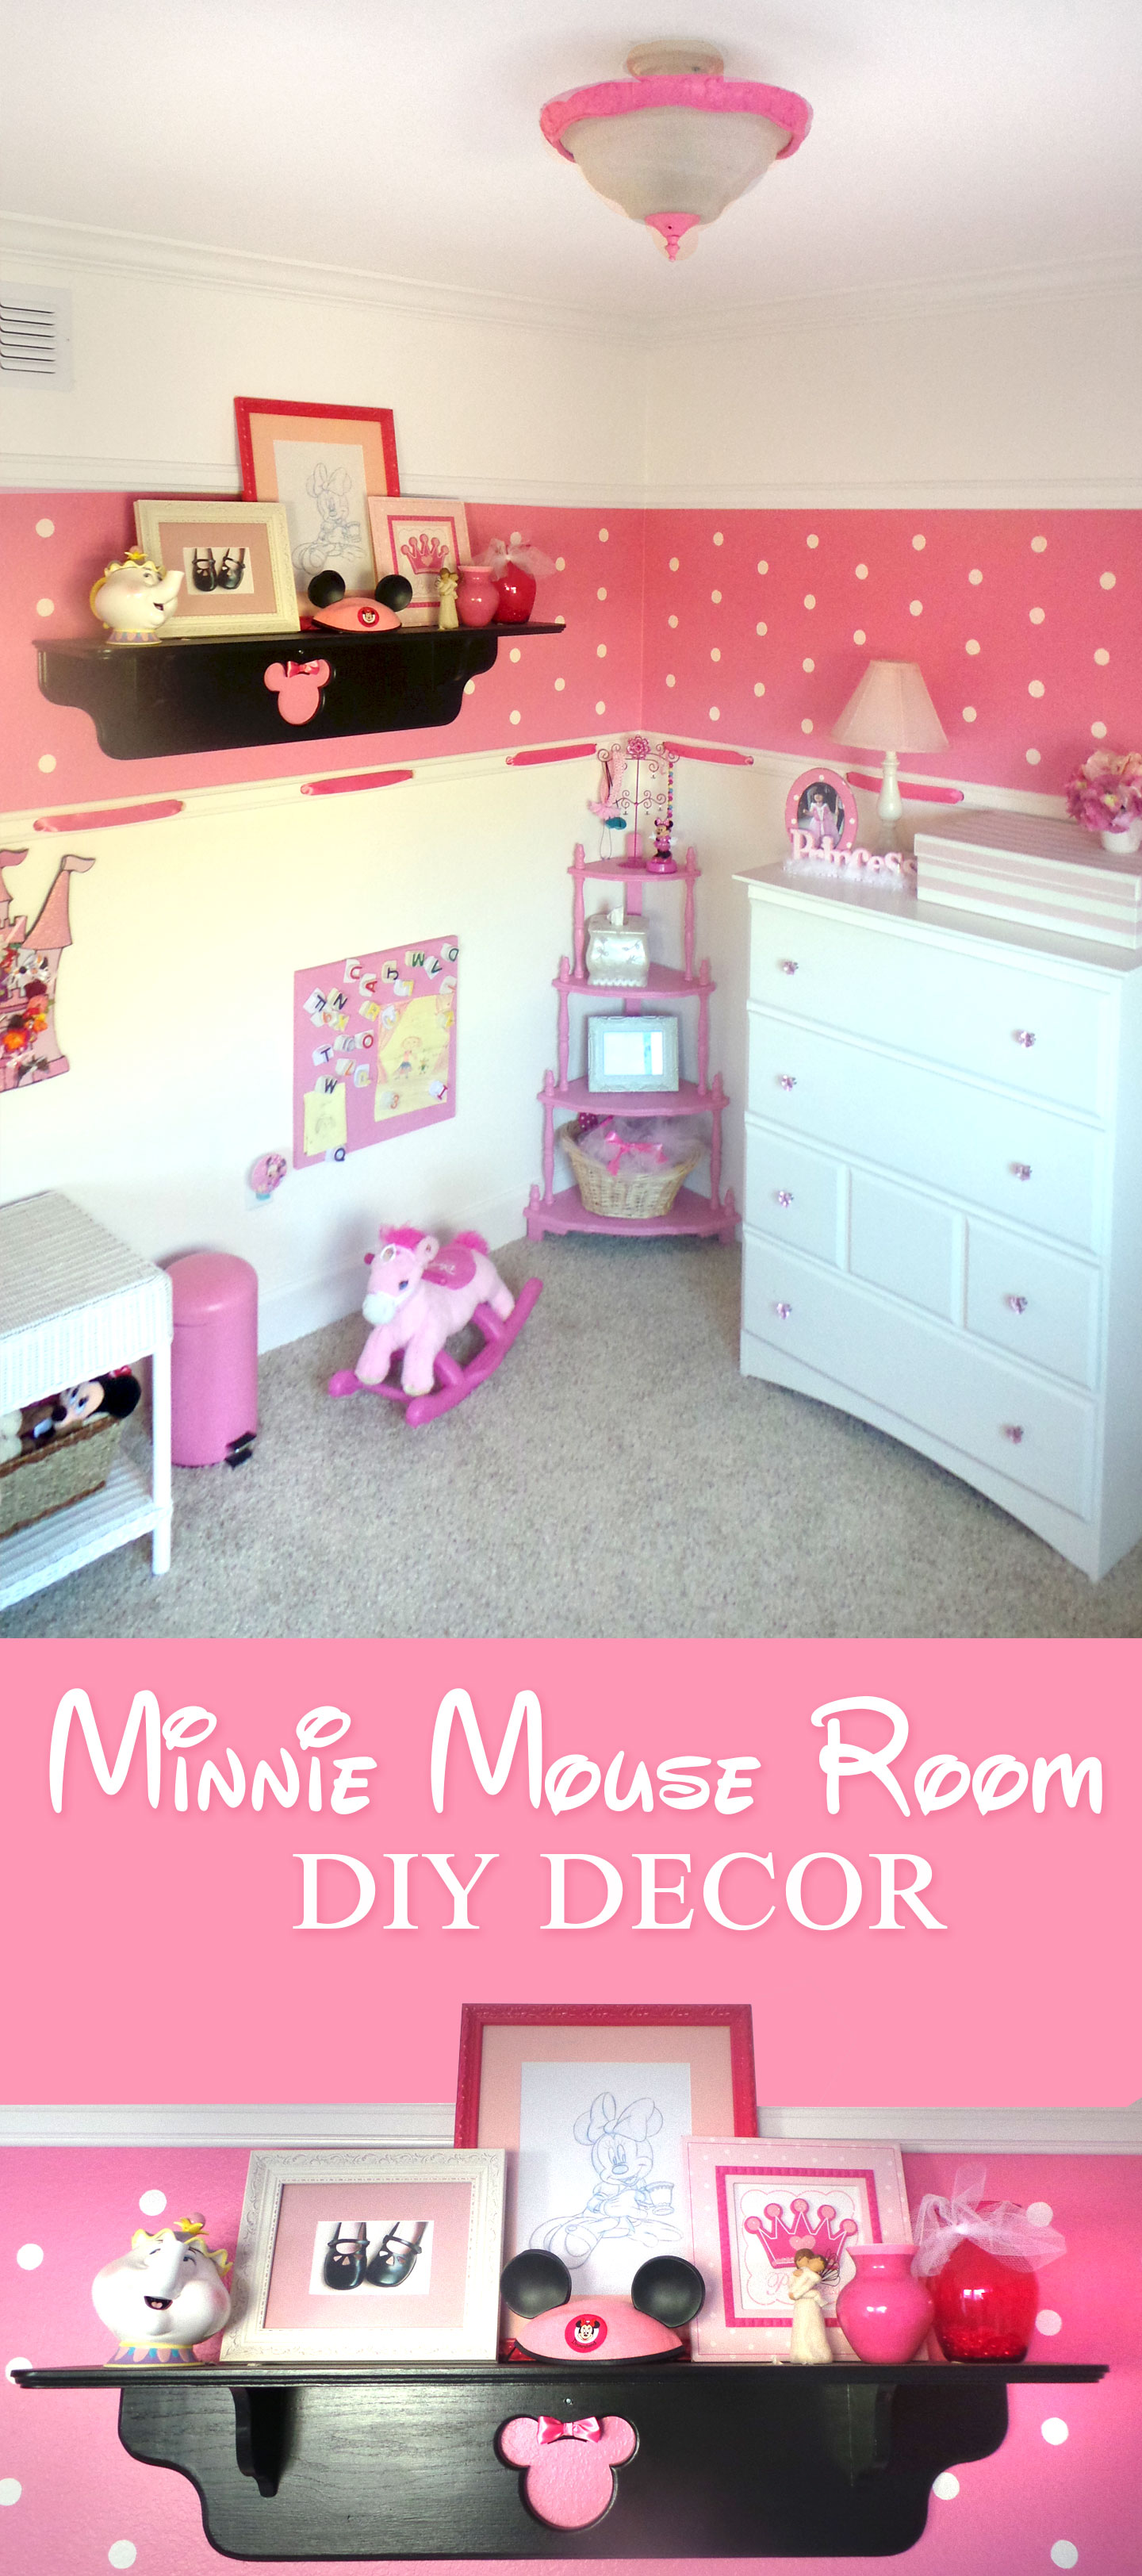 Minnie Mouse Room DIY Decor